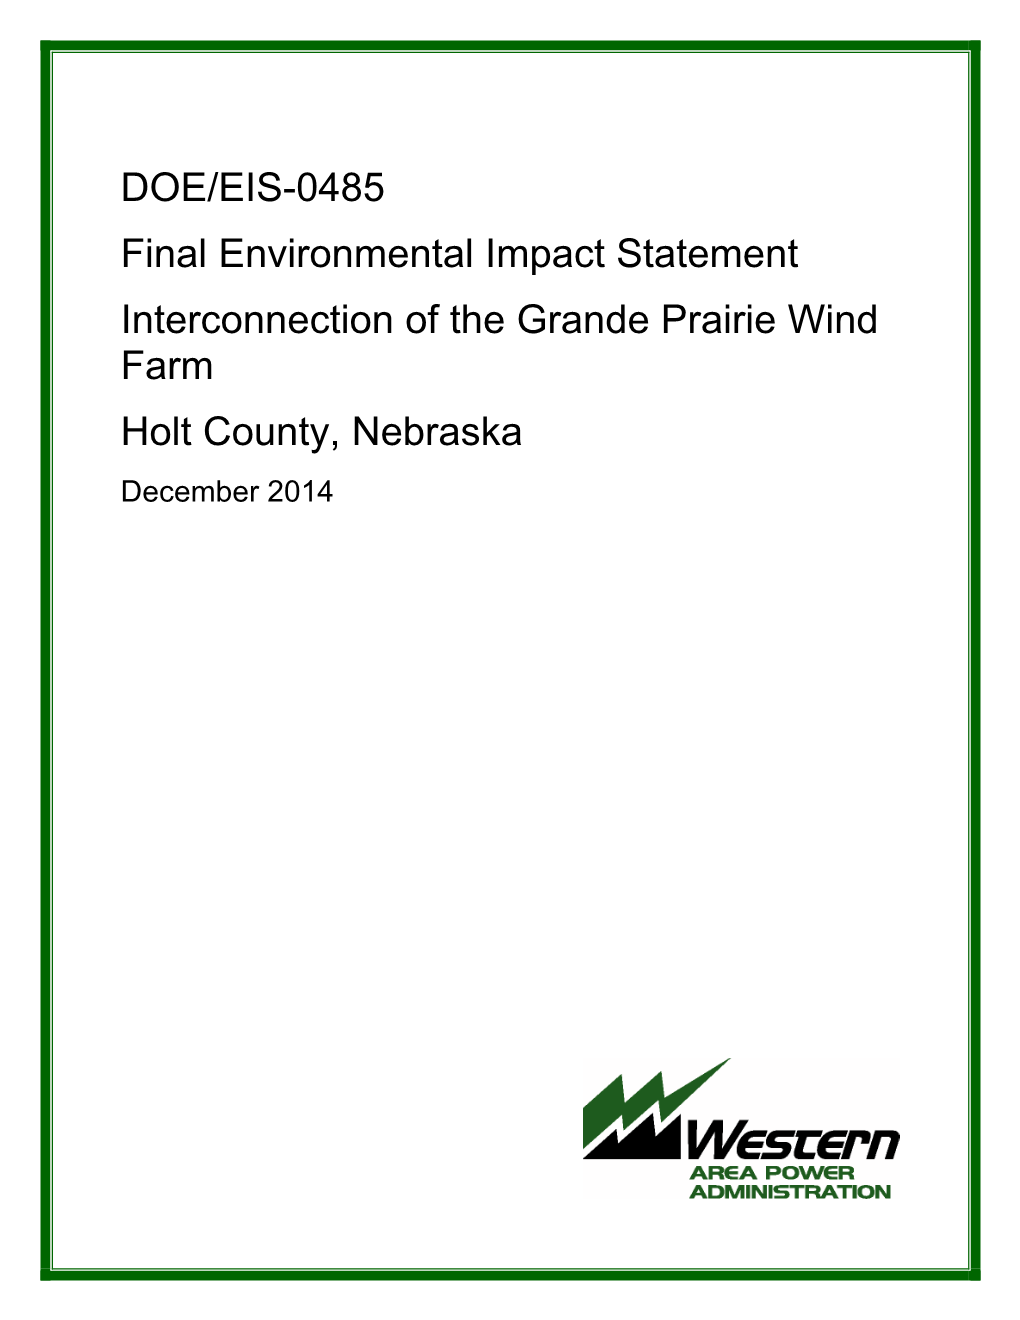 DOE/EIS-0485 Final Environmental Impact Statement Grande Prairie Wind Farm